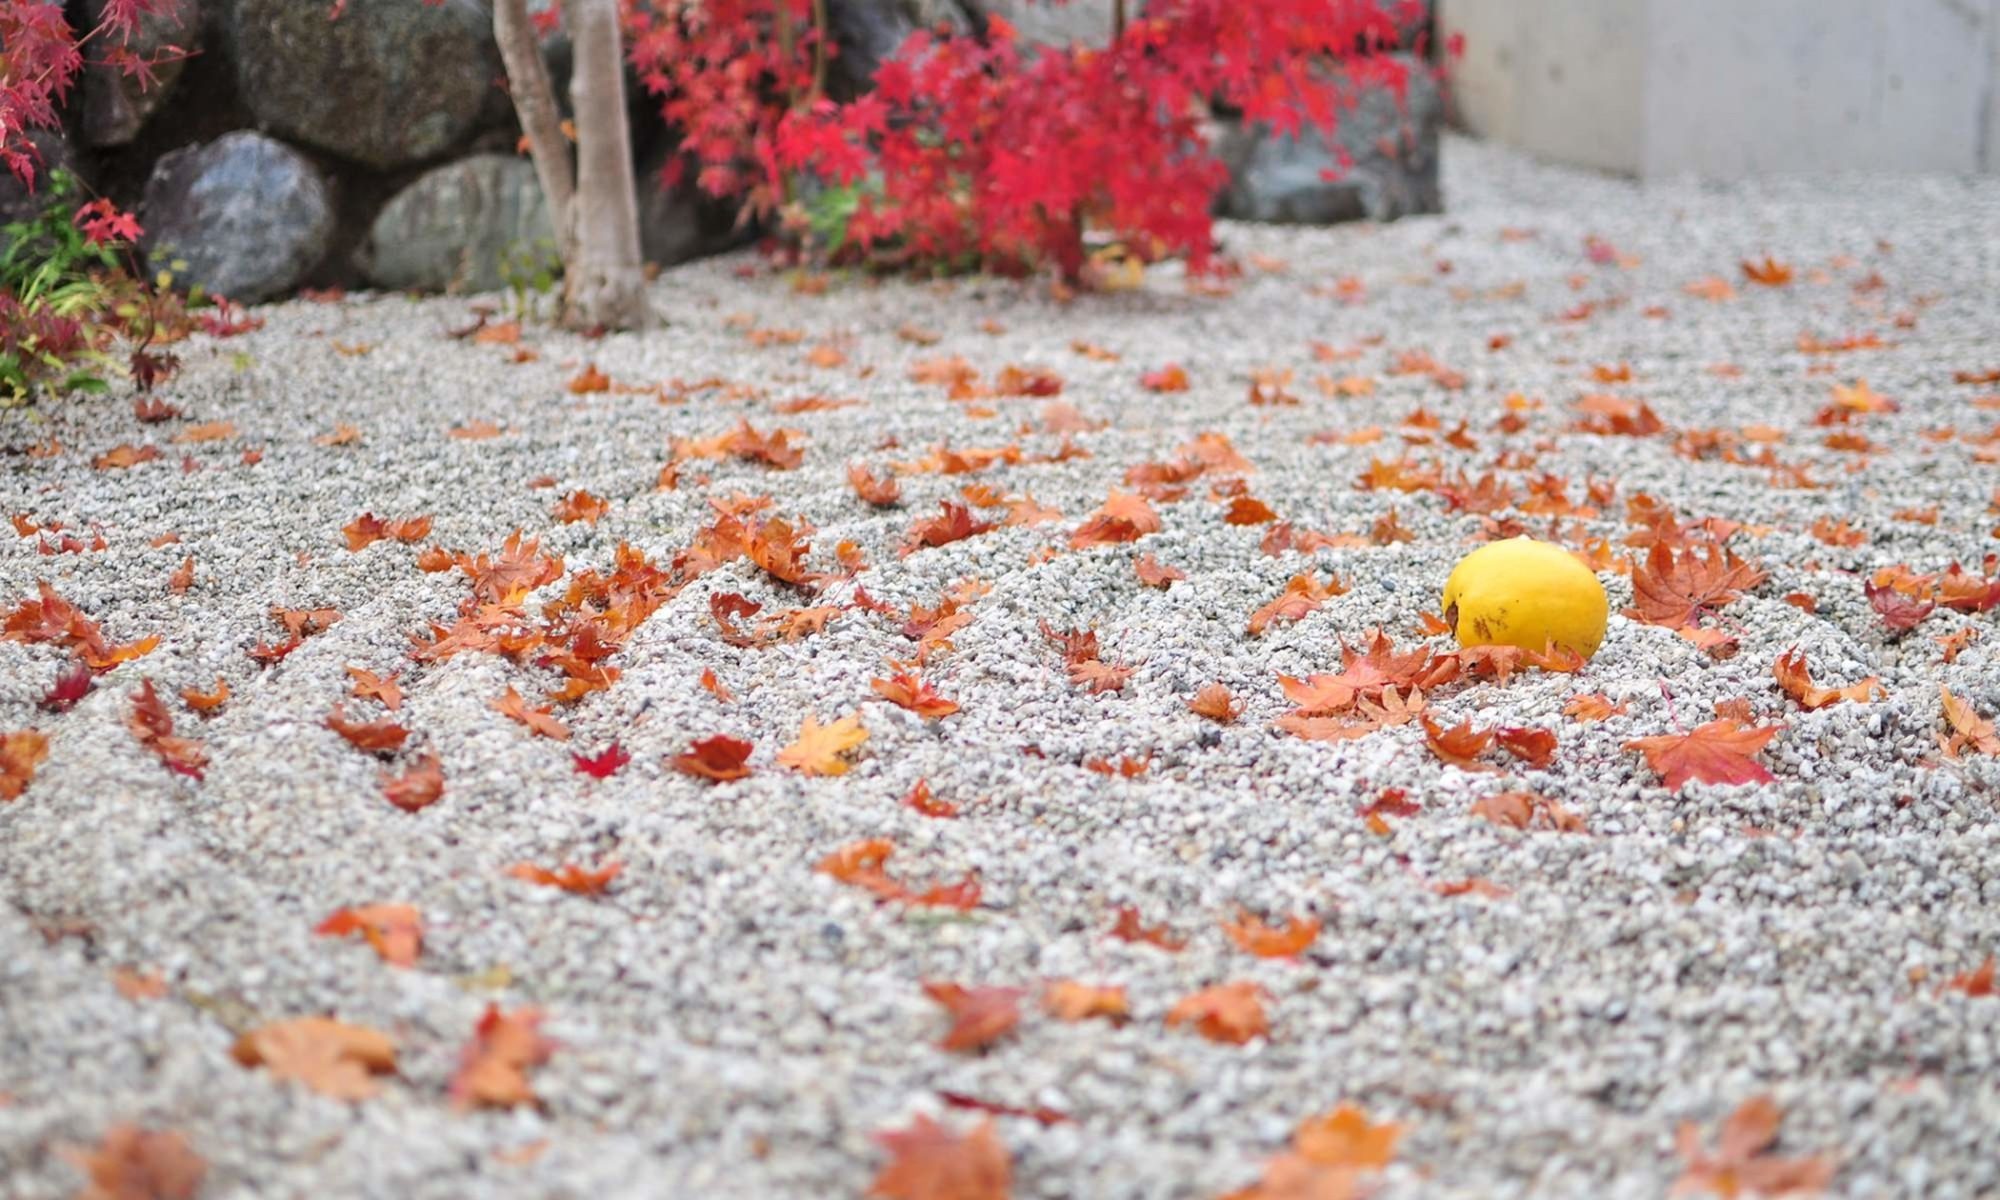 京都の地元事業者・京都在住者だからこそ伝えられる、京都観光のおすすめスポットやイベント、いざという時の情報などを定期的に紹介しています。初めて訪れる方もリピーターの方も、春夏秋冬の京都をぜひ楽しんで下さい。